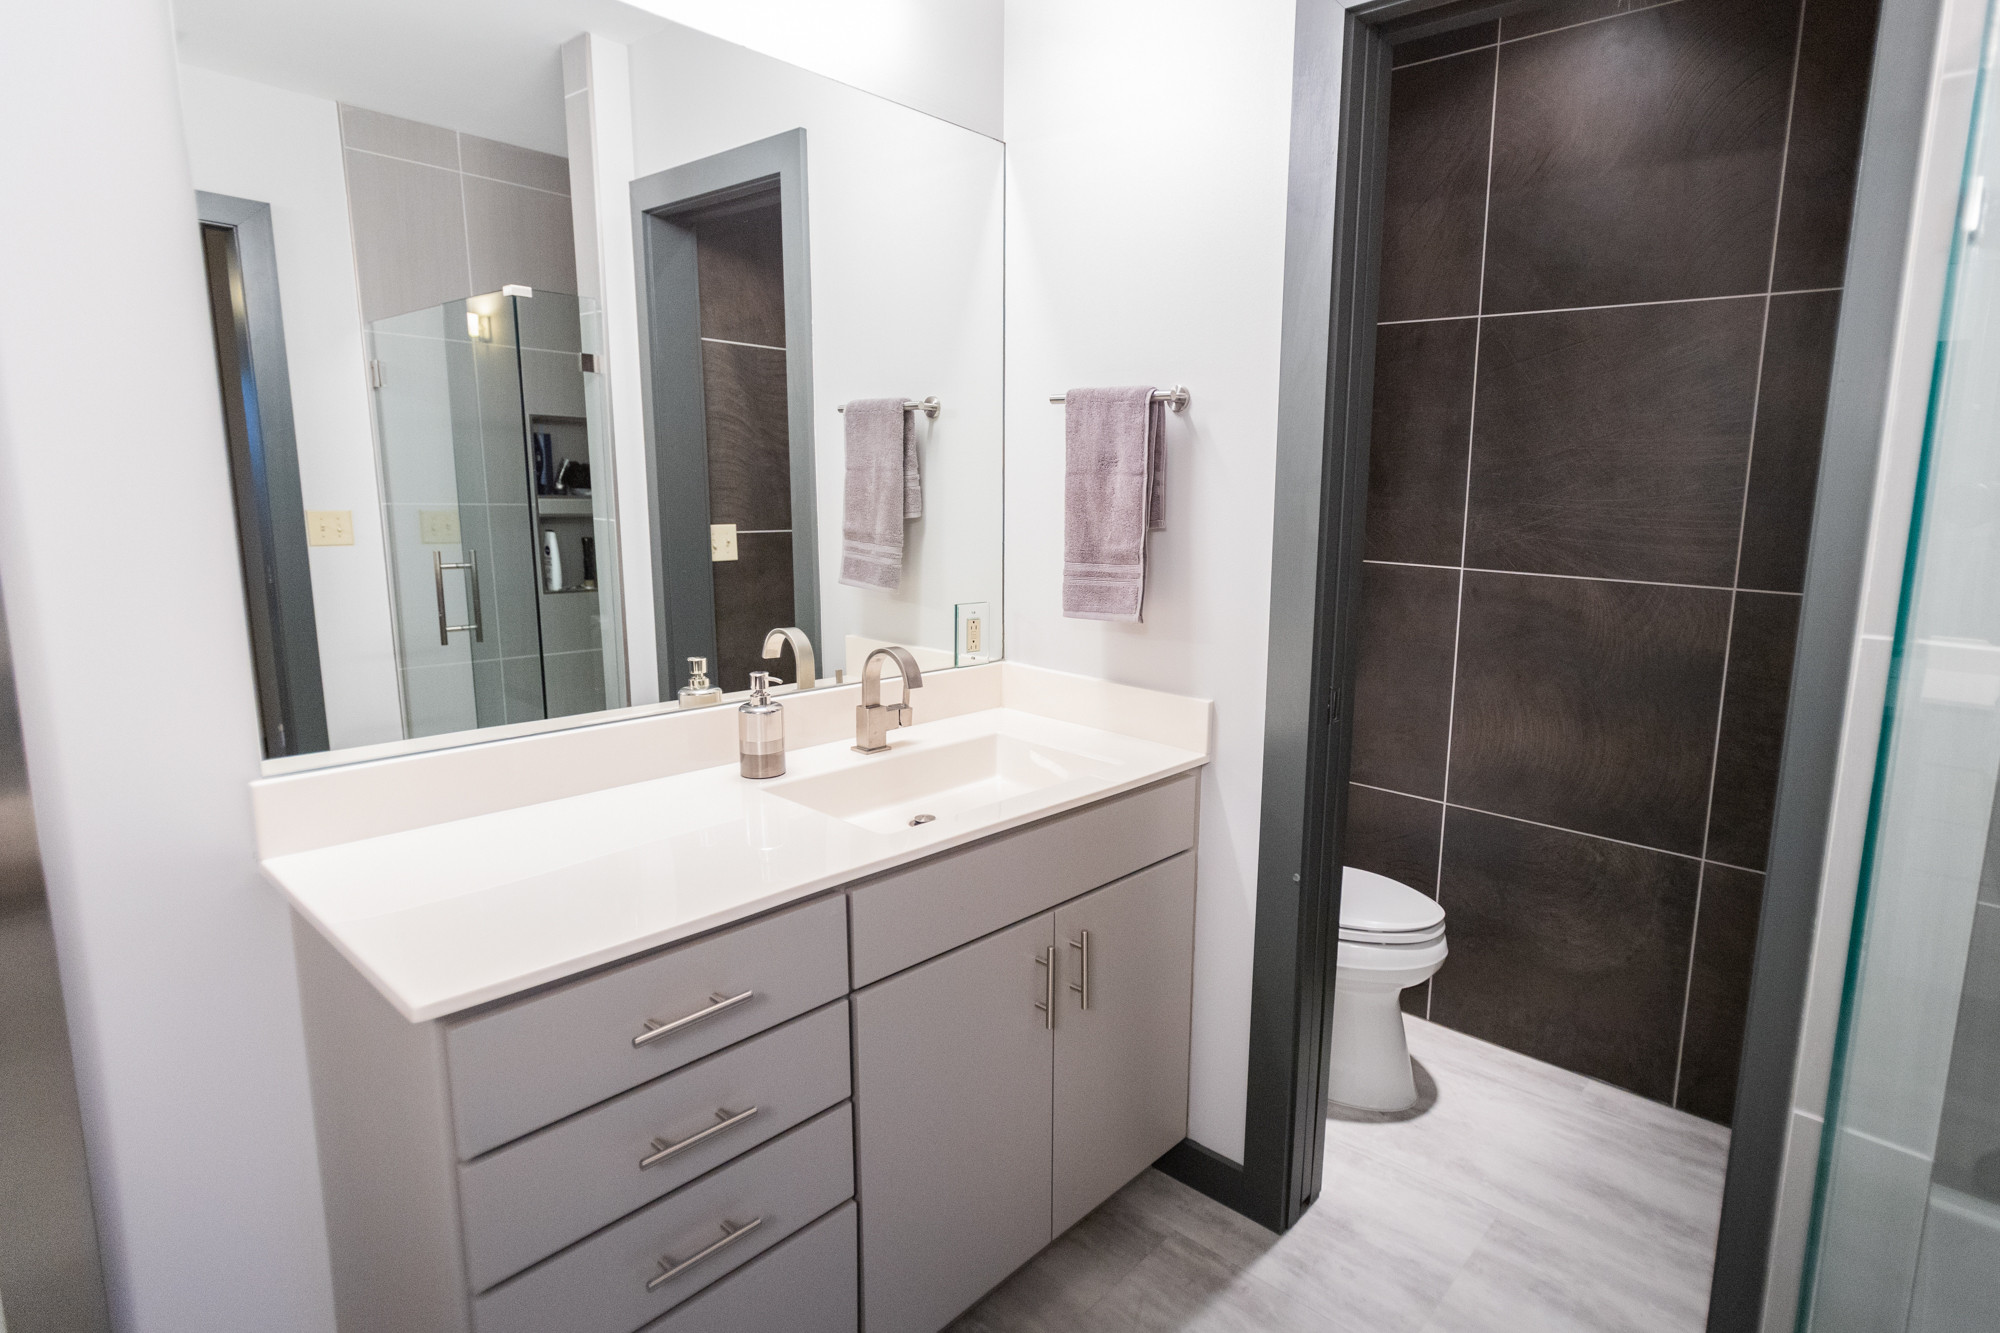 Bathroom Remodeling Wichita Ks
 bathroom remodel in Wichita KS Pinnacle Homes Inc